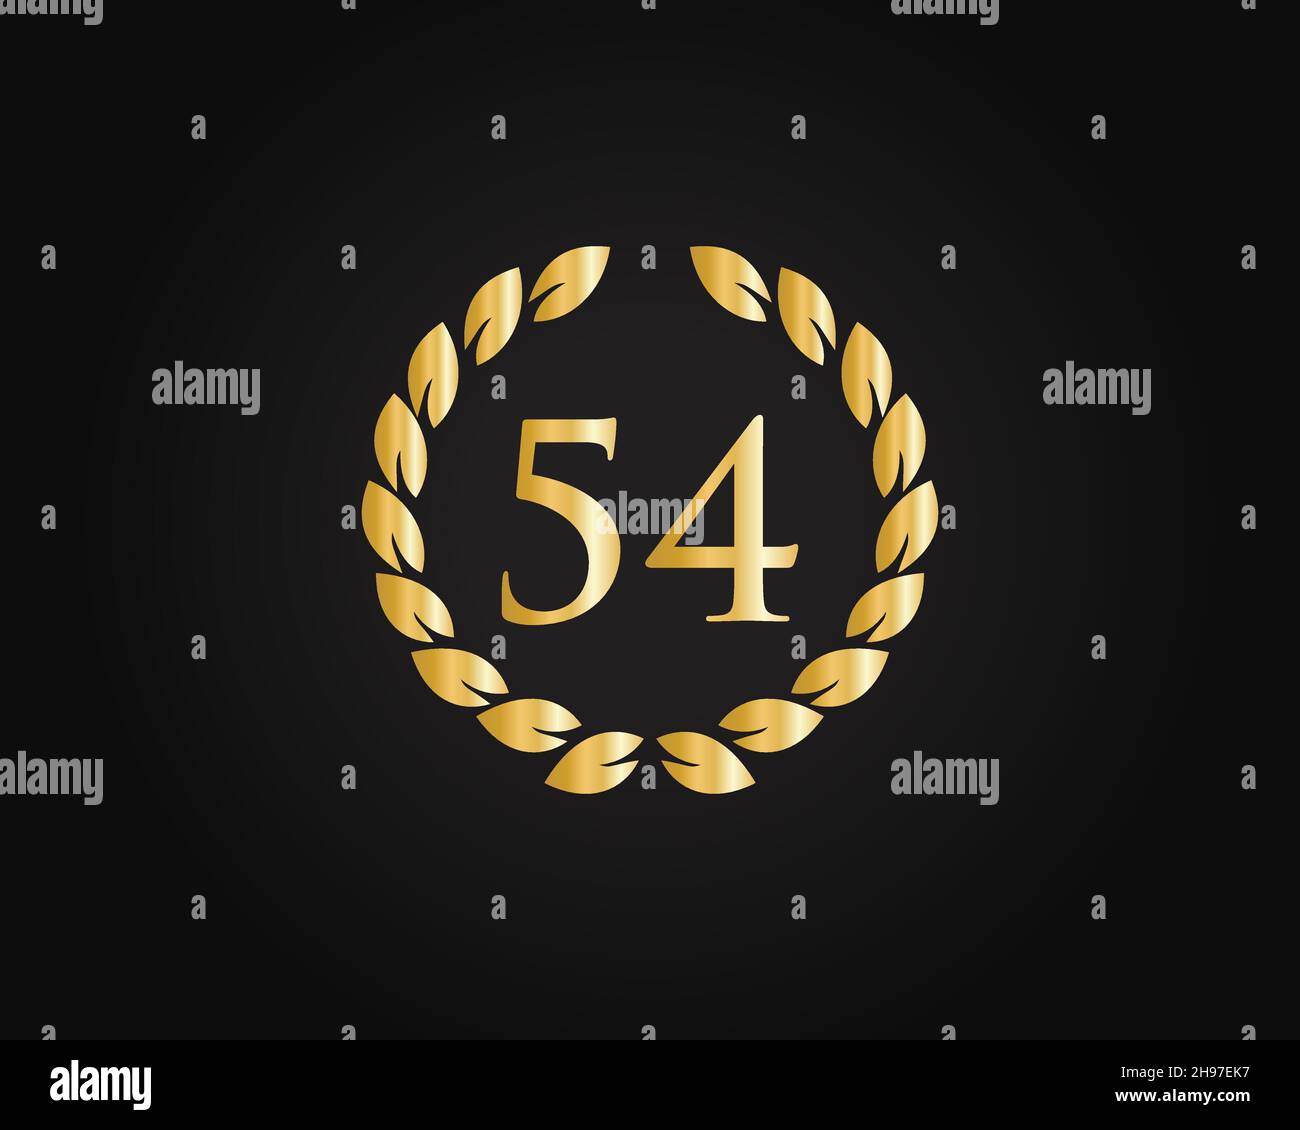 54th Jahre Jubiläum Ring Logo Vorlage. 54th Jahre Jubiläums-Logo mit goldenem Ring isoliert auf schwarzem Hintergrund, für Geburtstag, Jubiläum Stock Vektor